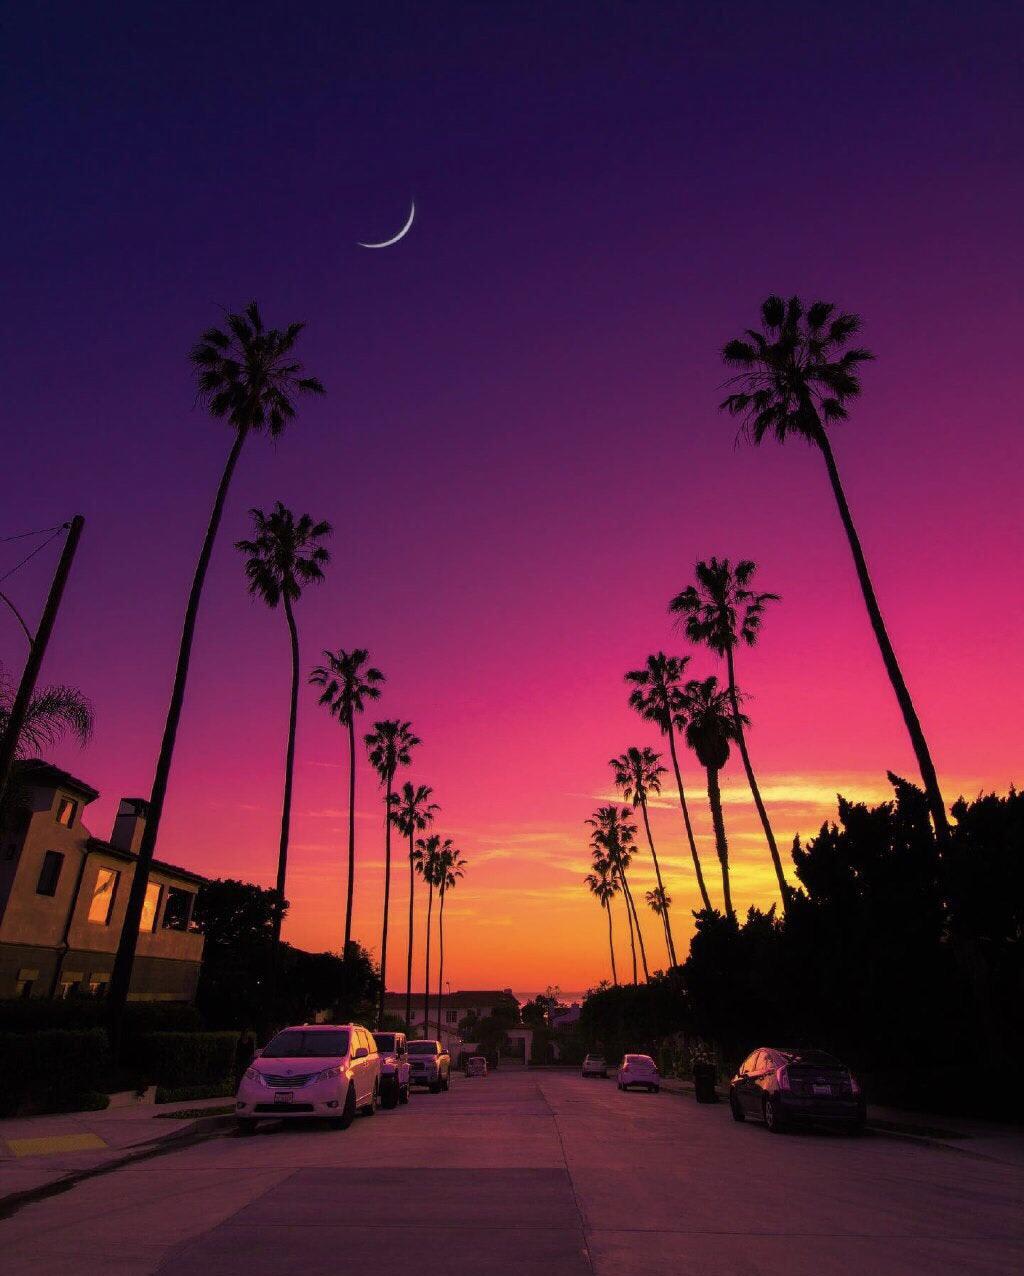 PsBattle: “Sunset in San Diego, California”